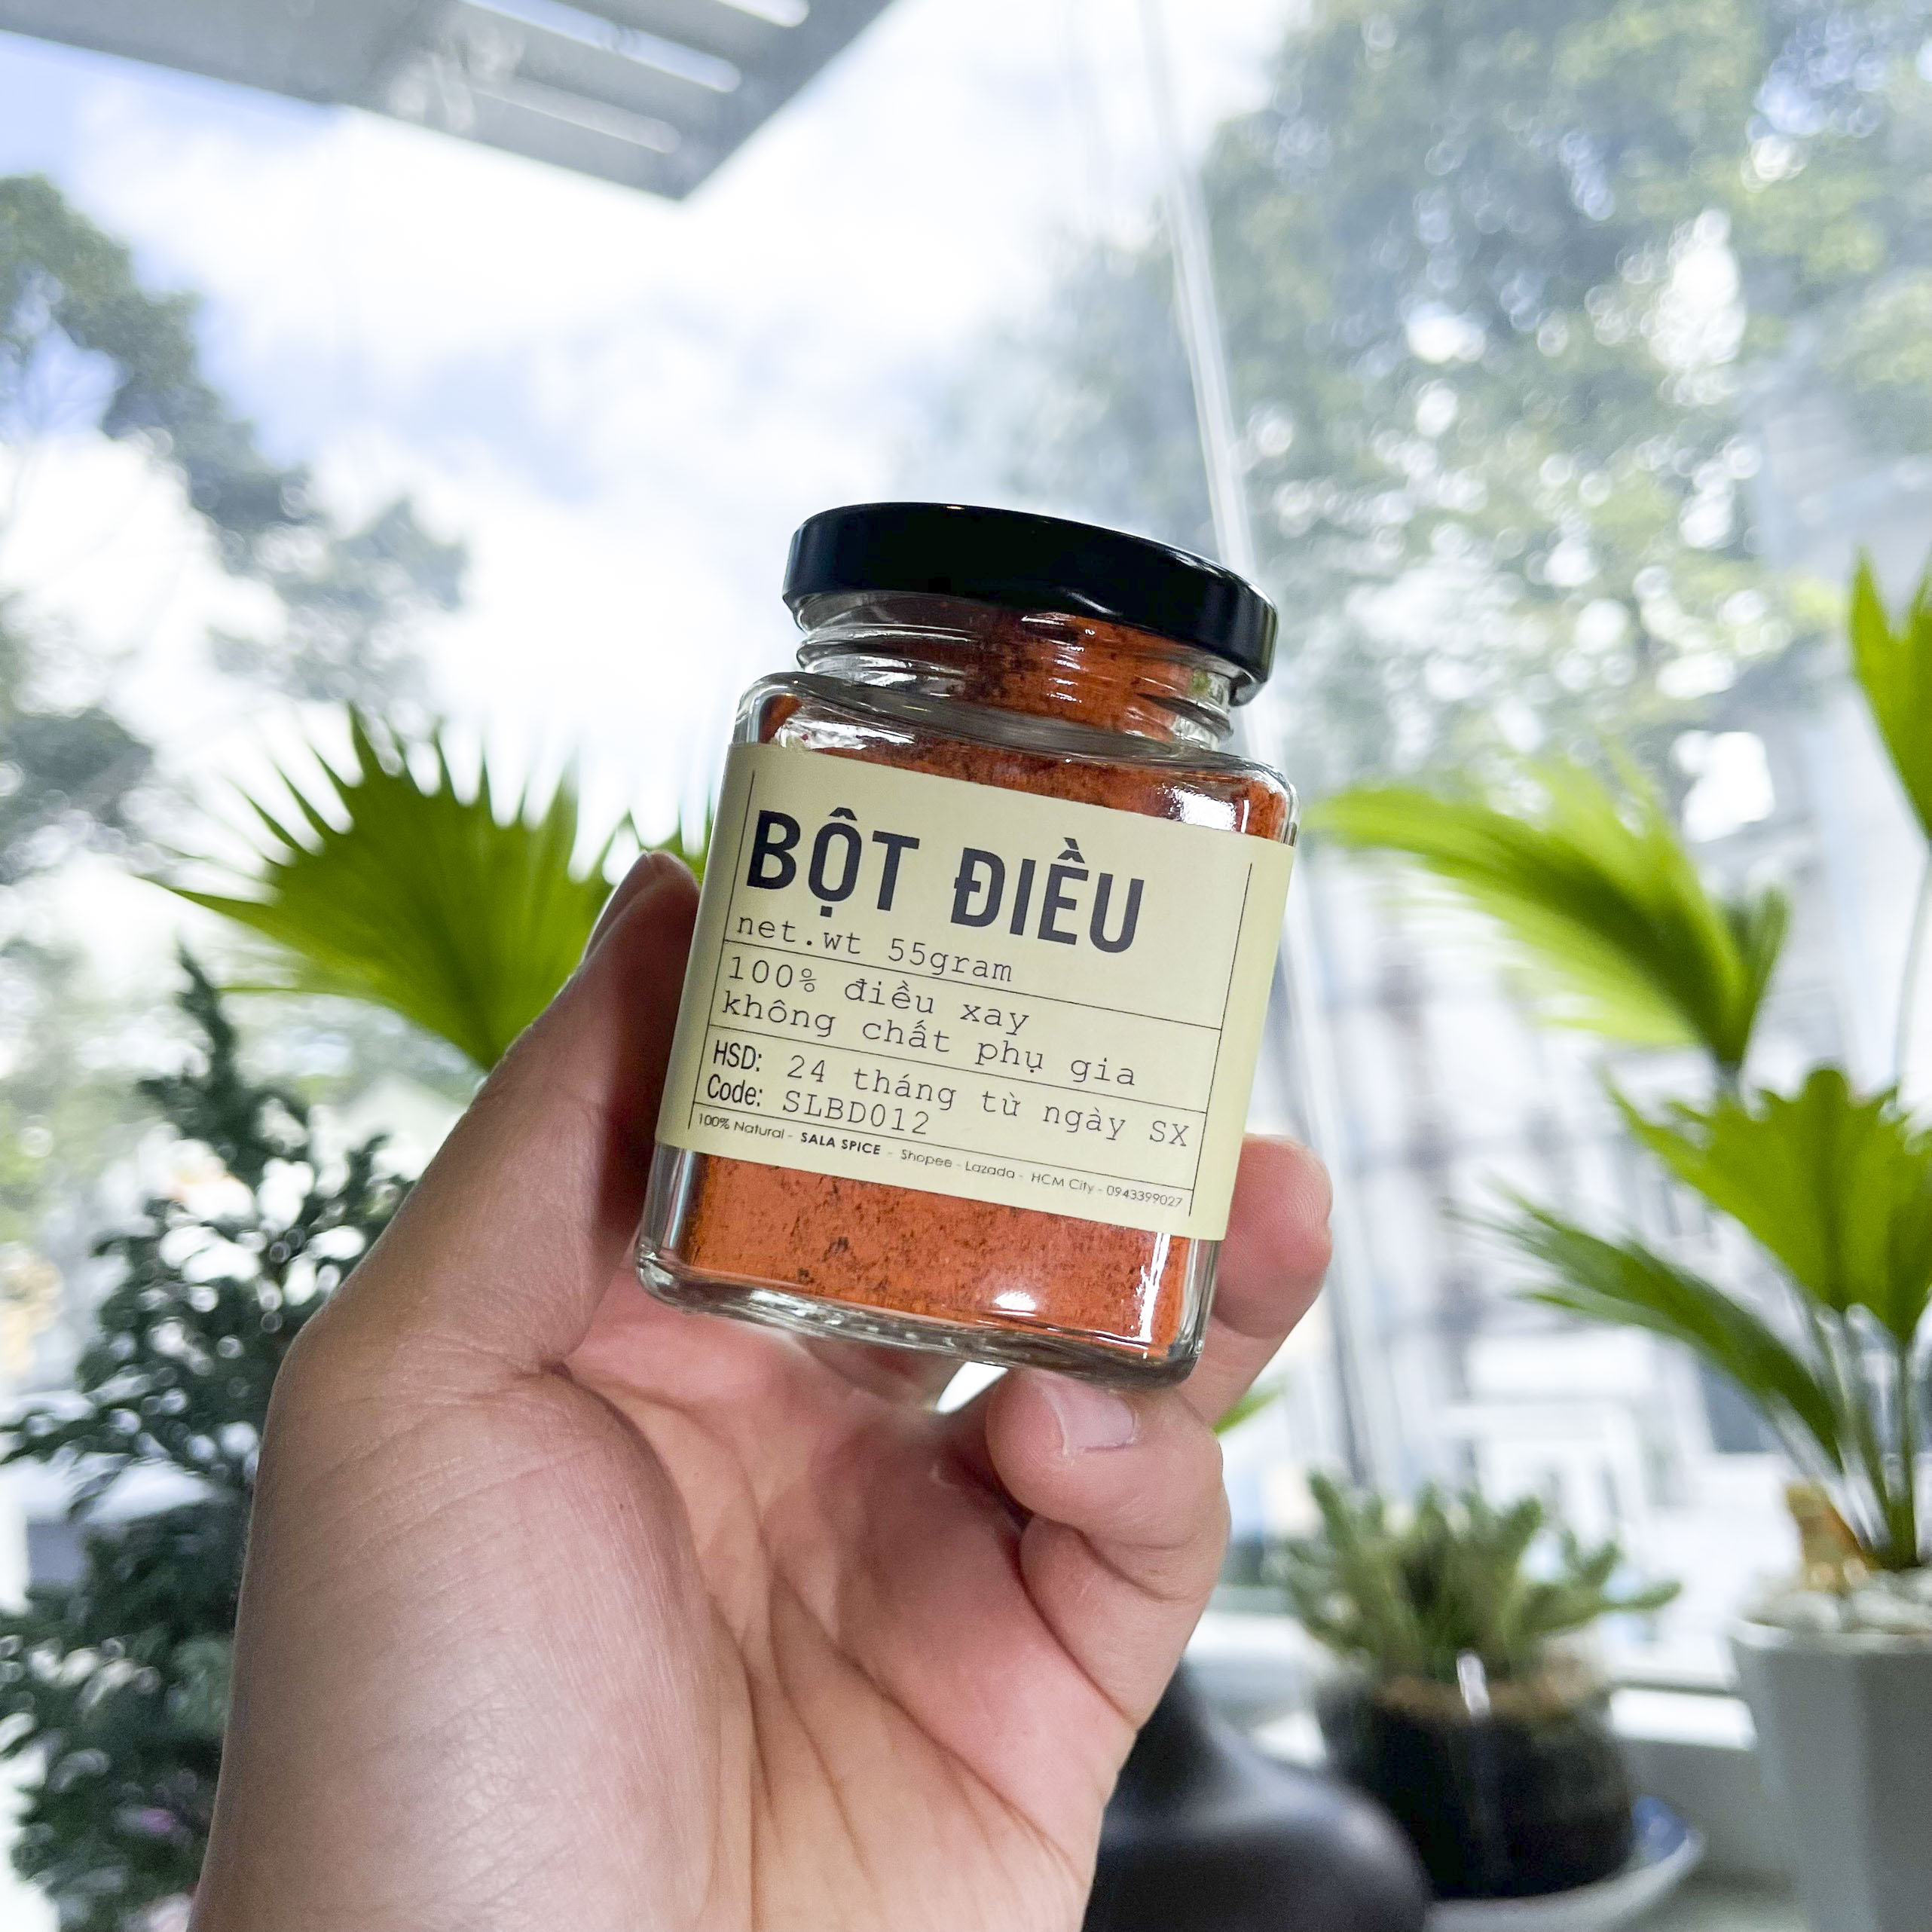 bột điều sala spice annatto powder 100% điều xay tiện lợi , dễ dàng chế biến , giúp món ăn đậm vị thơm ngon 4